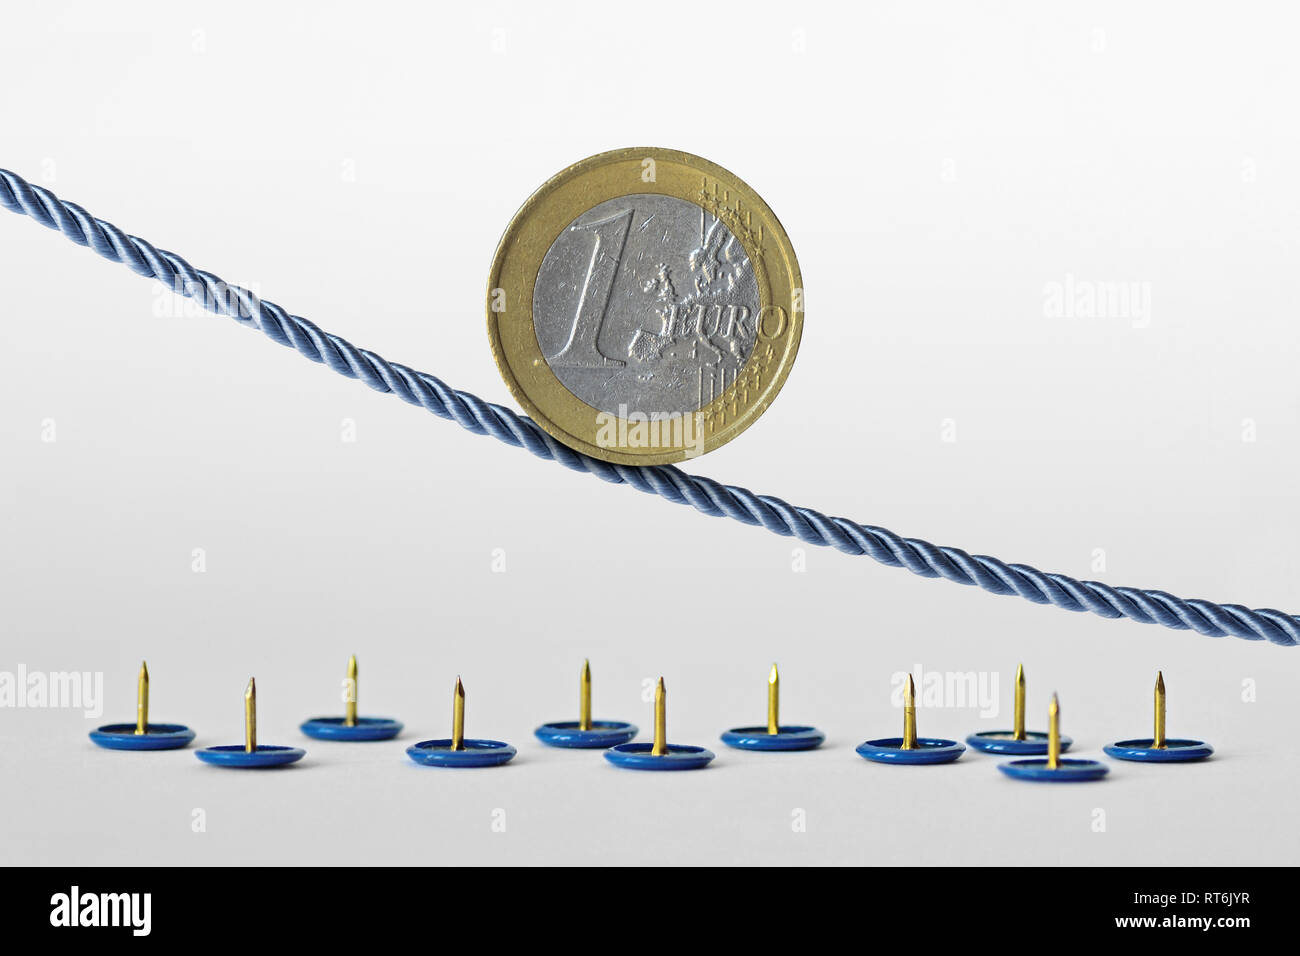 Pièce en euros sur corde sur des punaises - Concept de tendance à la baisse de l'euro et le risque de change euro Banque D'Images